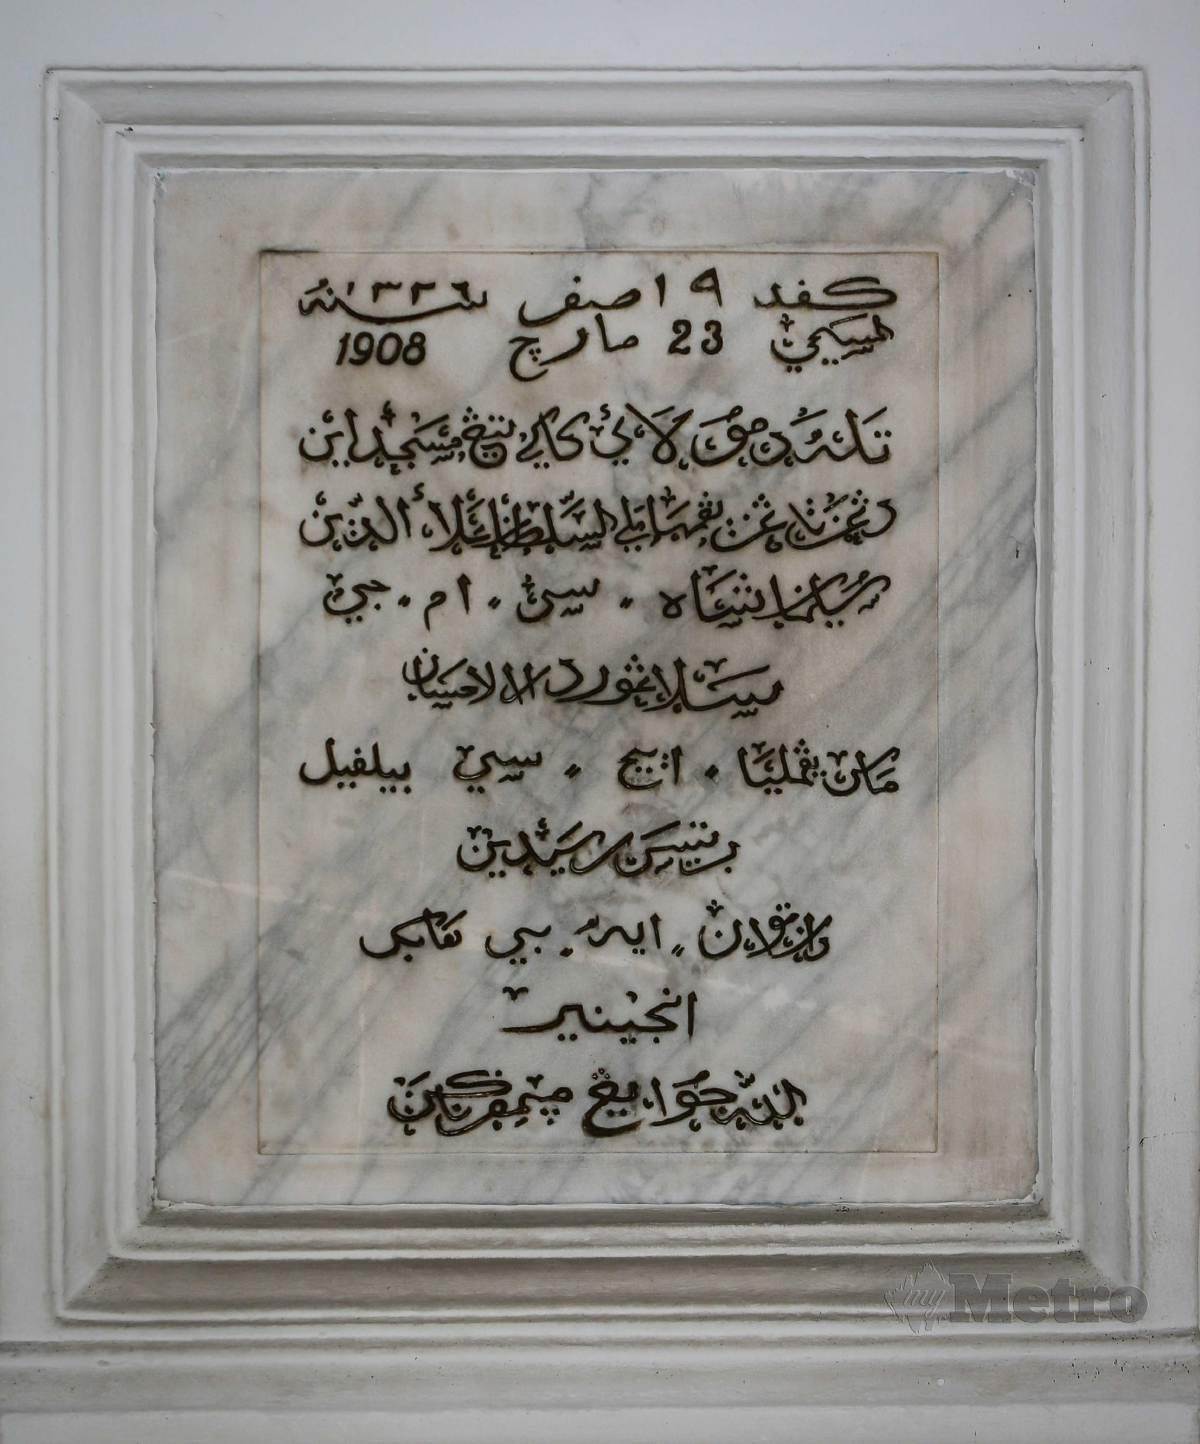 BATU asas masjid diletakkan pada 23 Mac 1908. FOTO Asyraf Hamzah